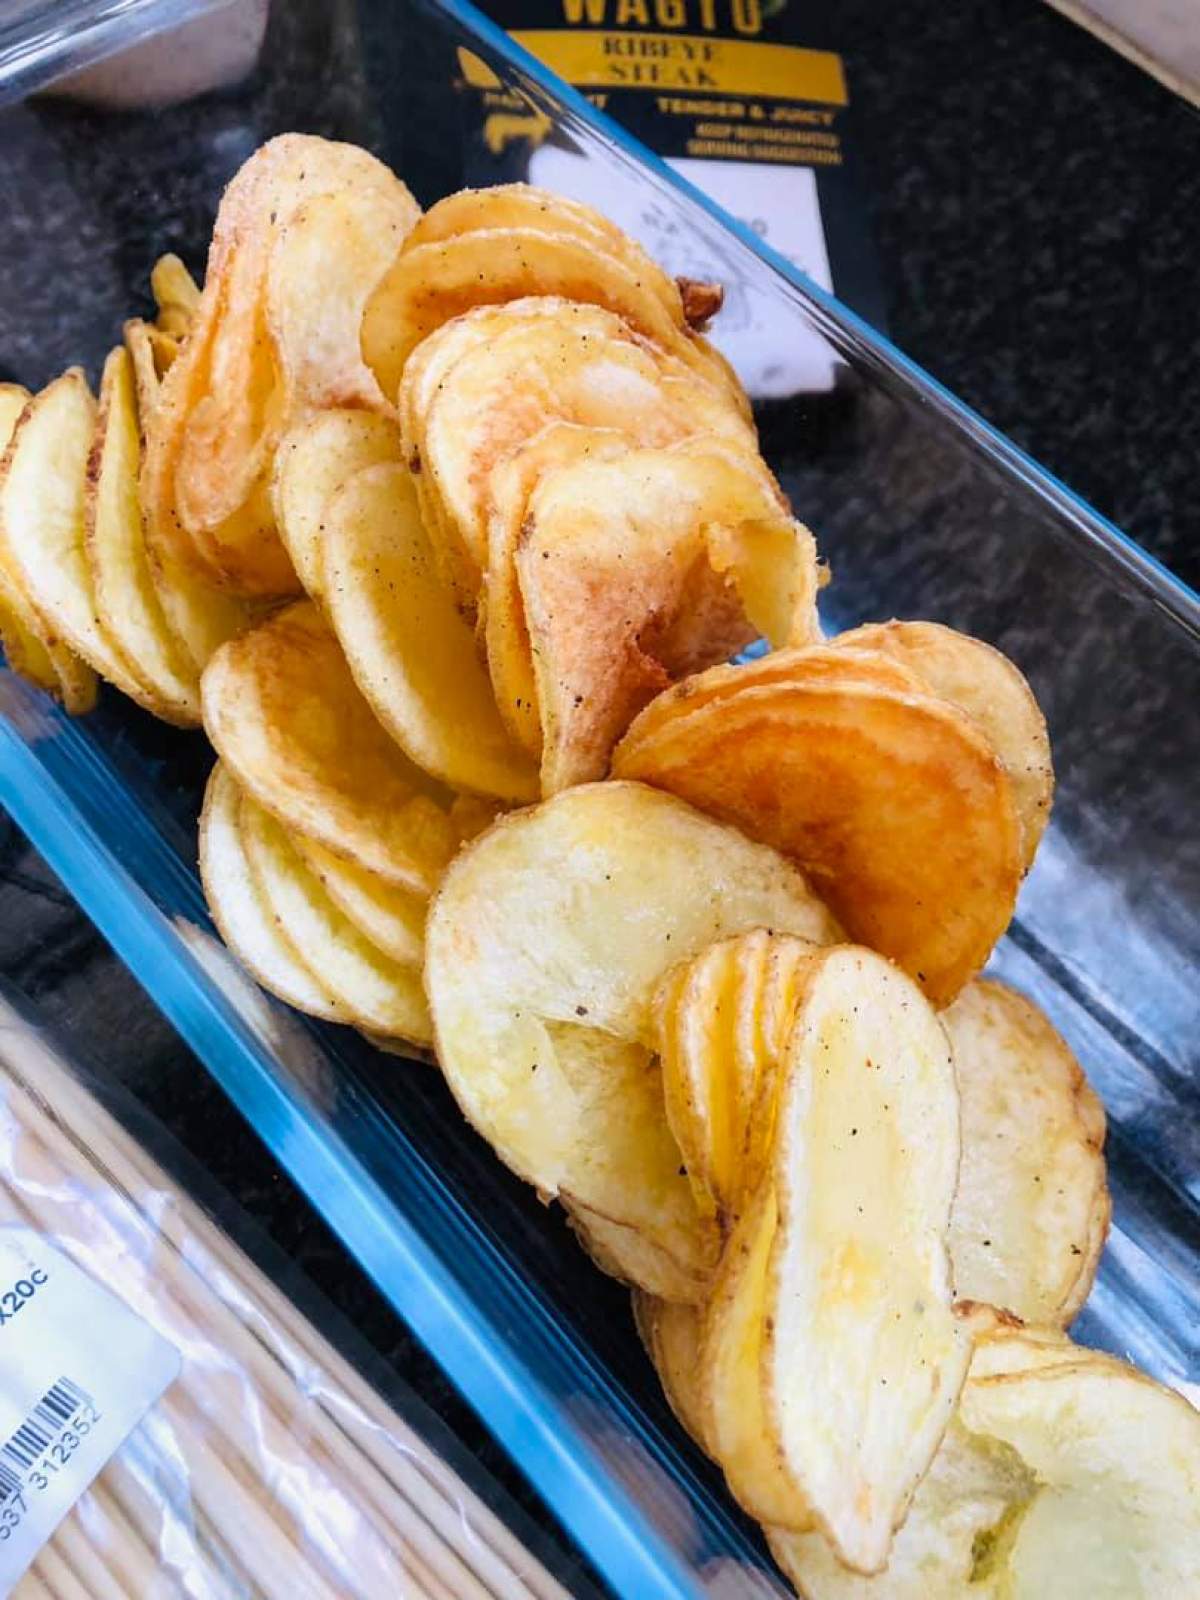 Chips-uri din cartofi. Rețeta simplă pentru acasă, adorată de toți copiii